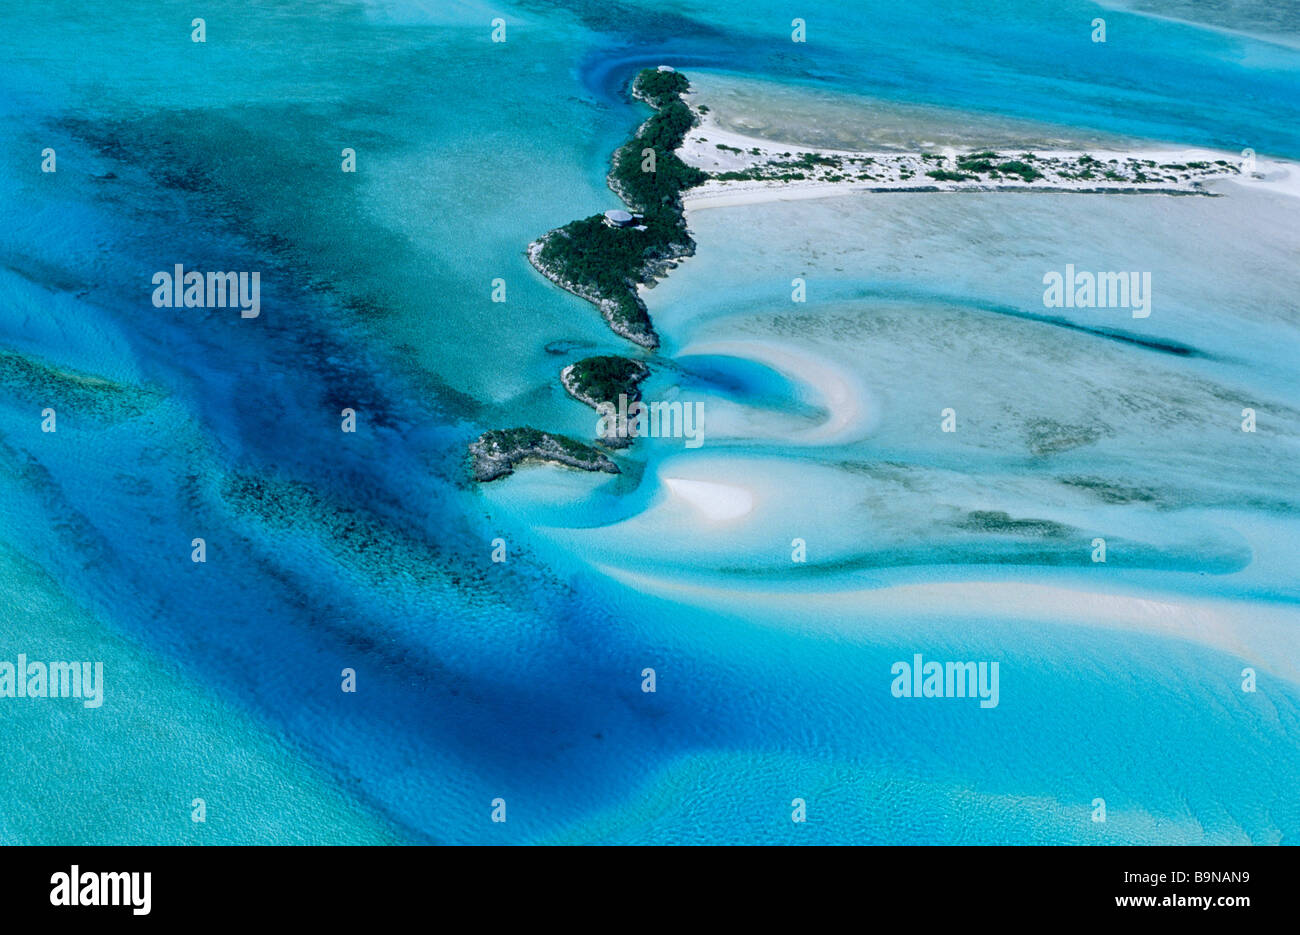 Bahamas, Exuma National Land and Sea Park, Exuma islands (aerial view) Stock Photo